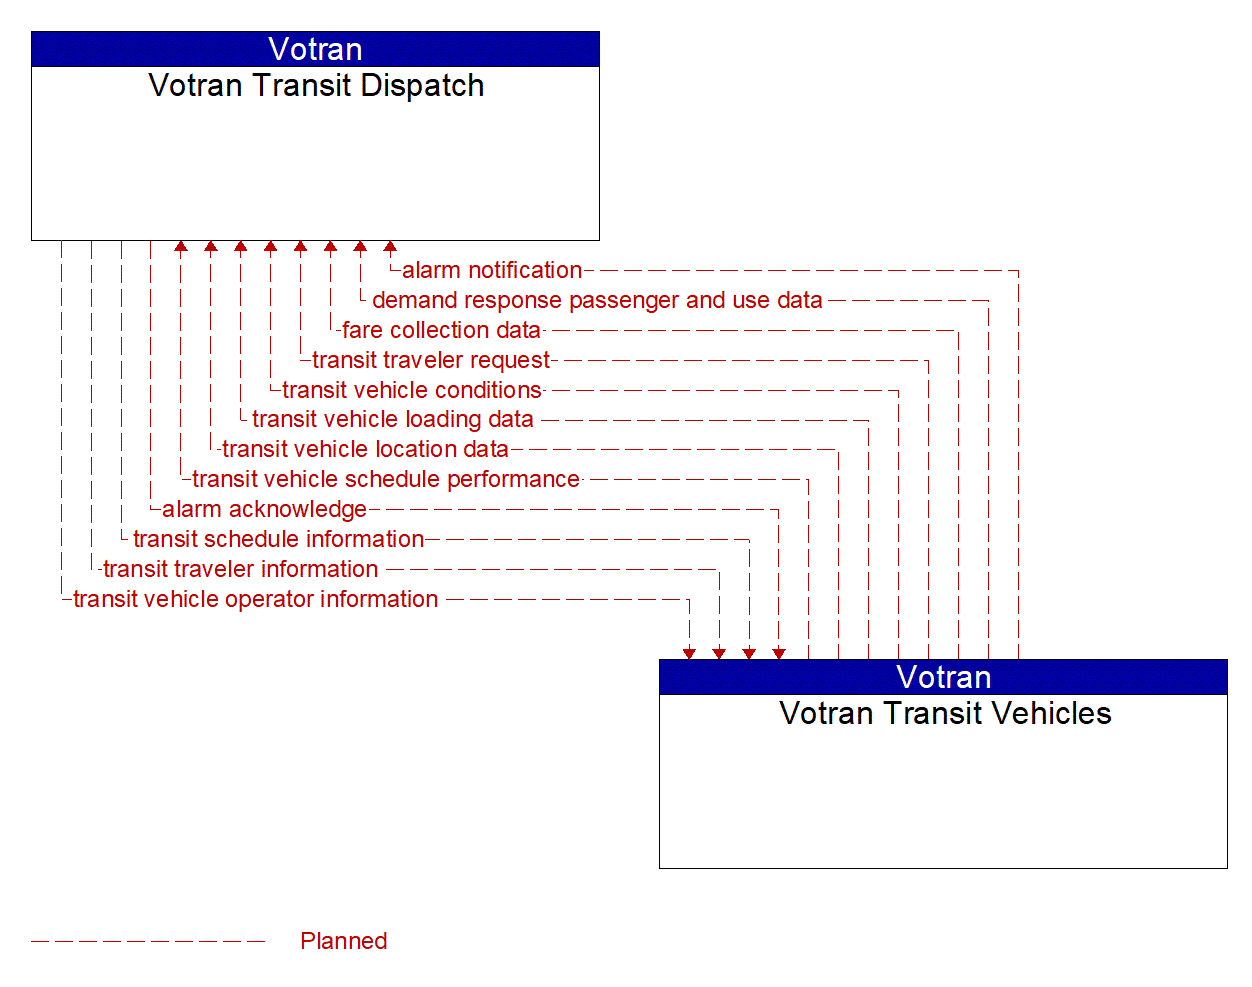 Architecture Flow Diagram: Votran Transit Vehicles <--> Votran Transit Dispatch